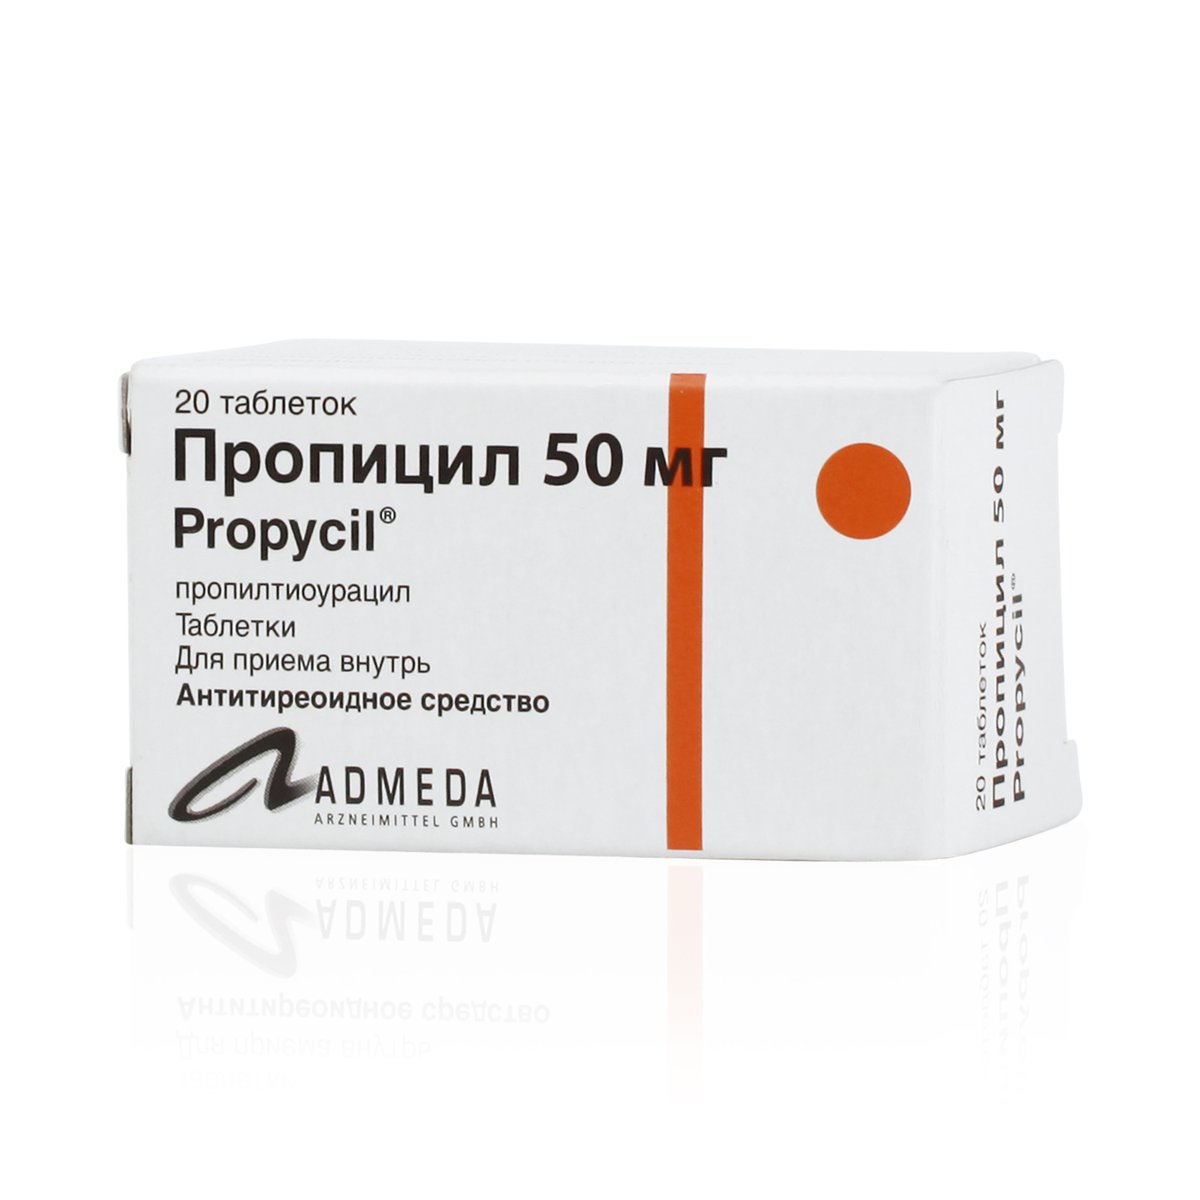 Пропицил (таблетки, 20 шт, 50 мг) - цена,  онлайн  .